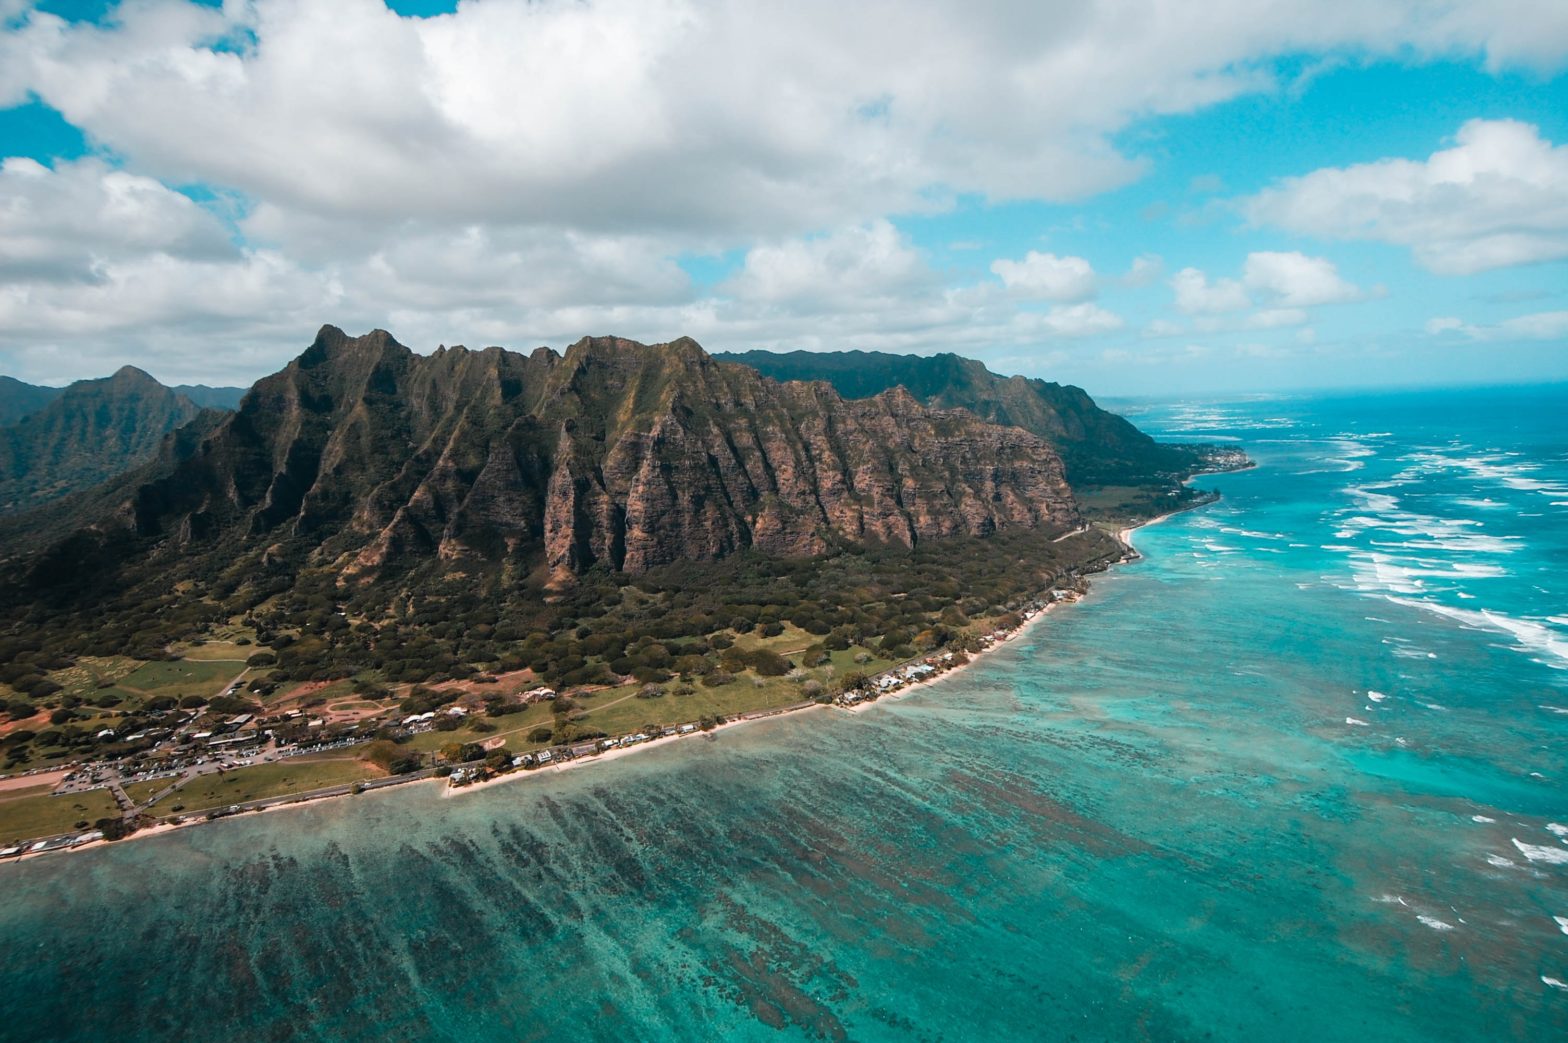 Vuelo de Hawaiian Airlines se encuentra con turbulencias extremas, lo que resulta en lesiones a pasajeros y tripulantes - Travel Noire